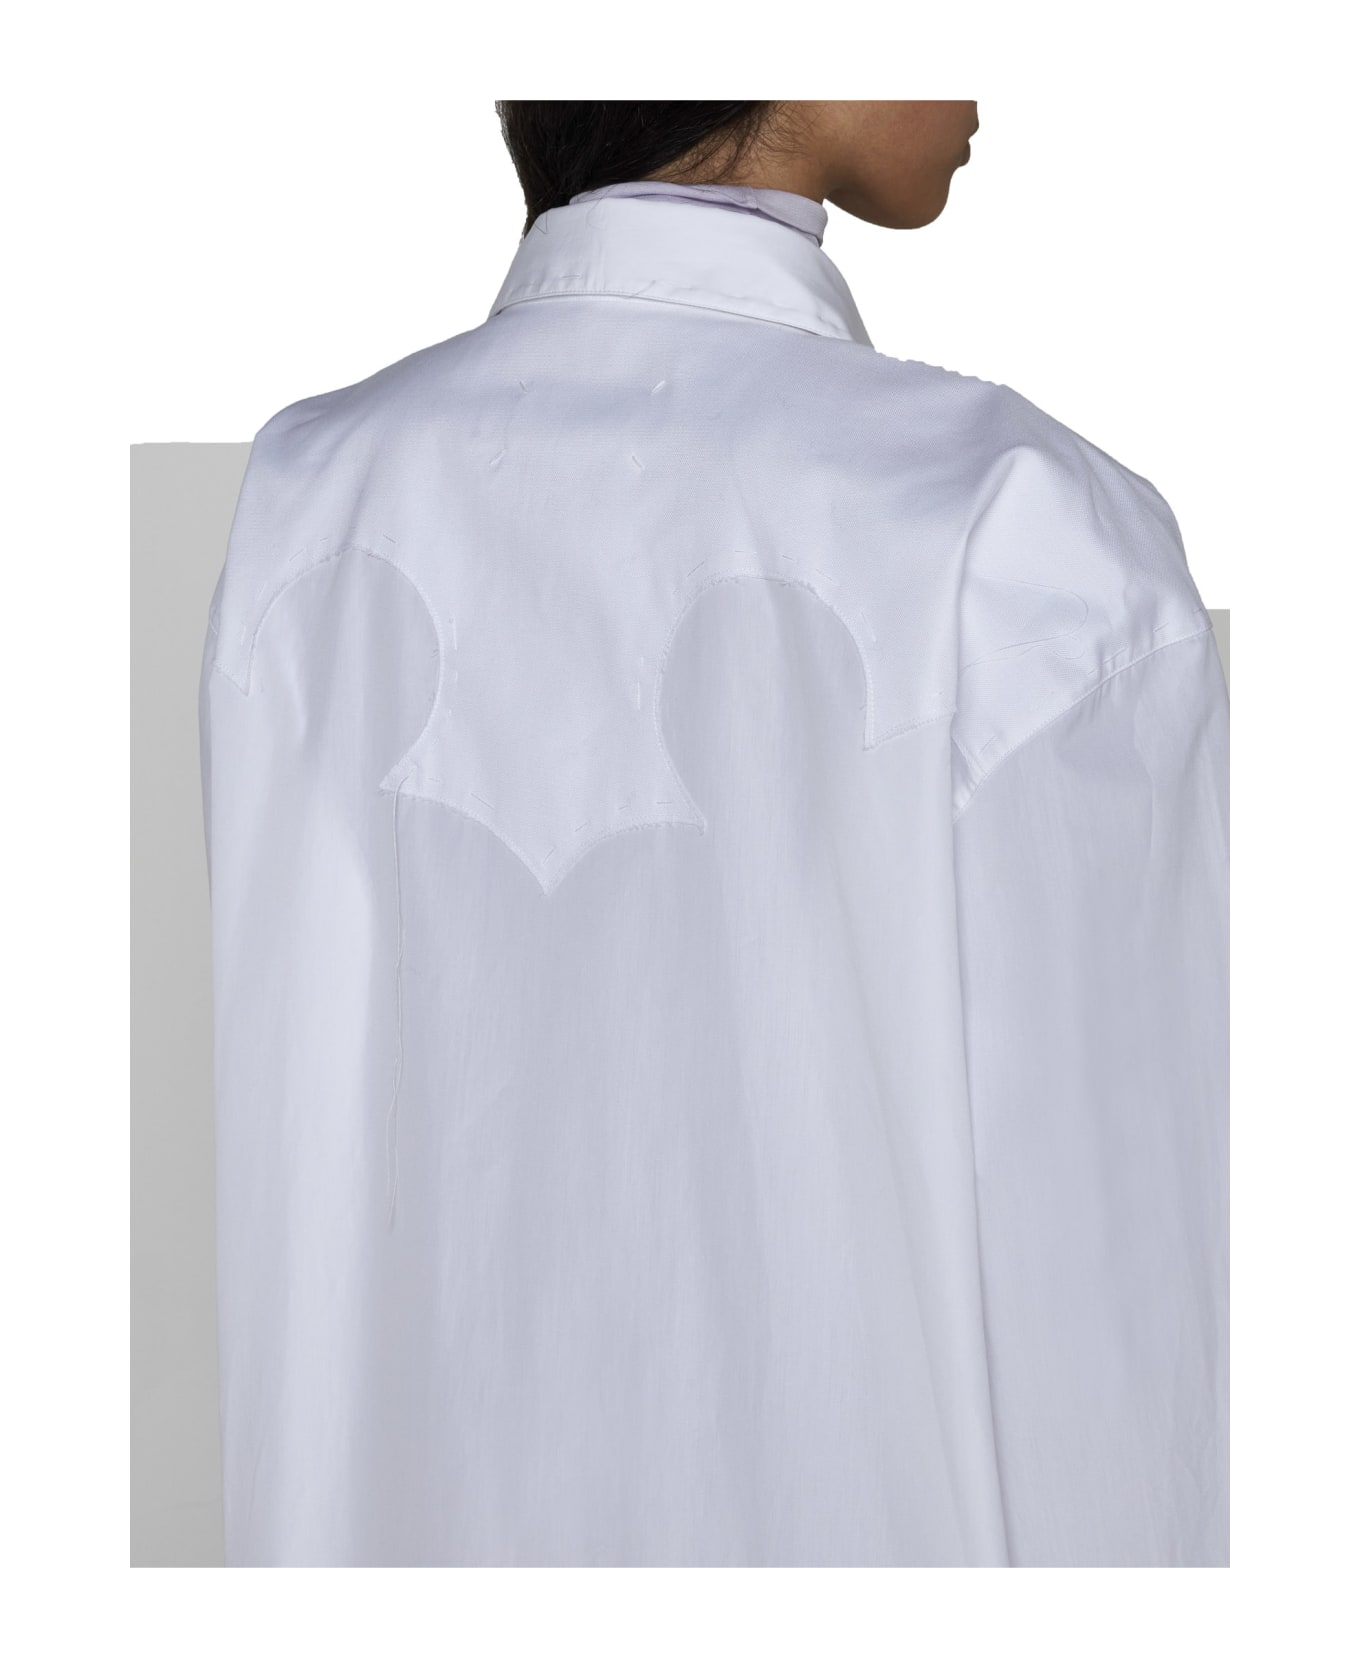 Maison Margiela Shirt - Optic white